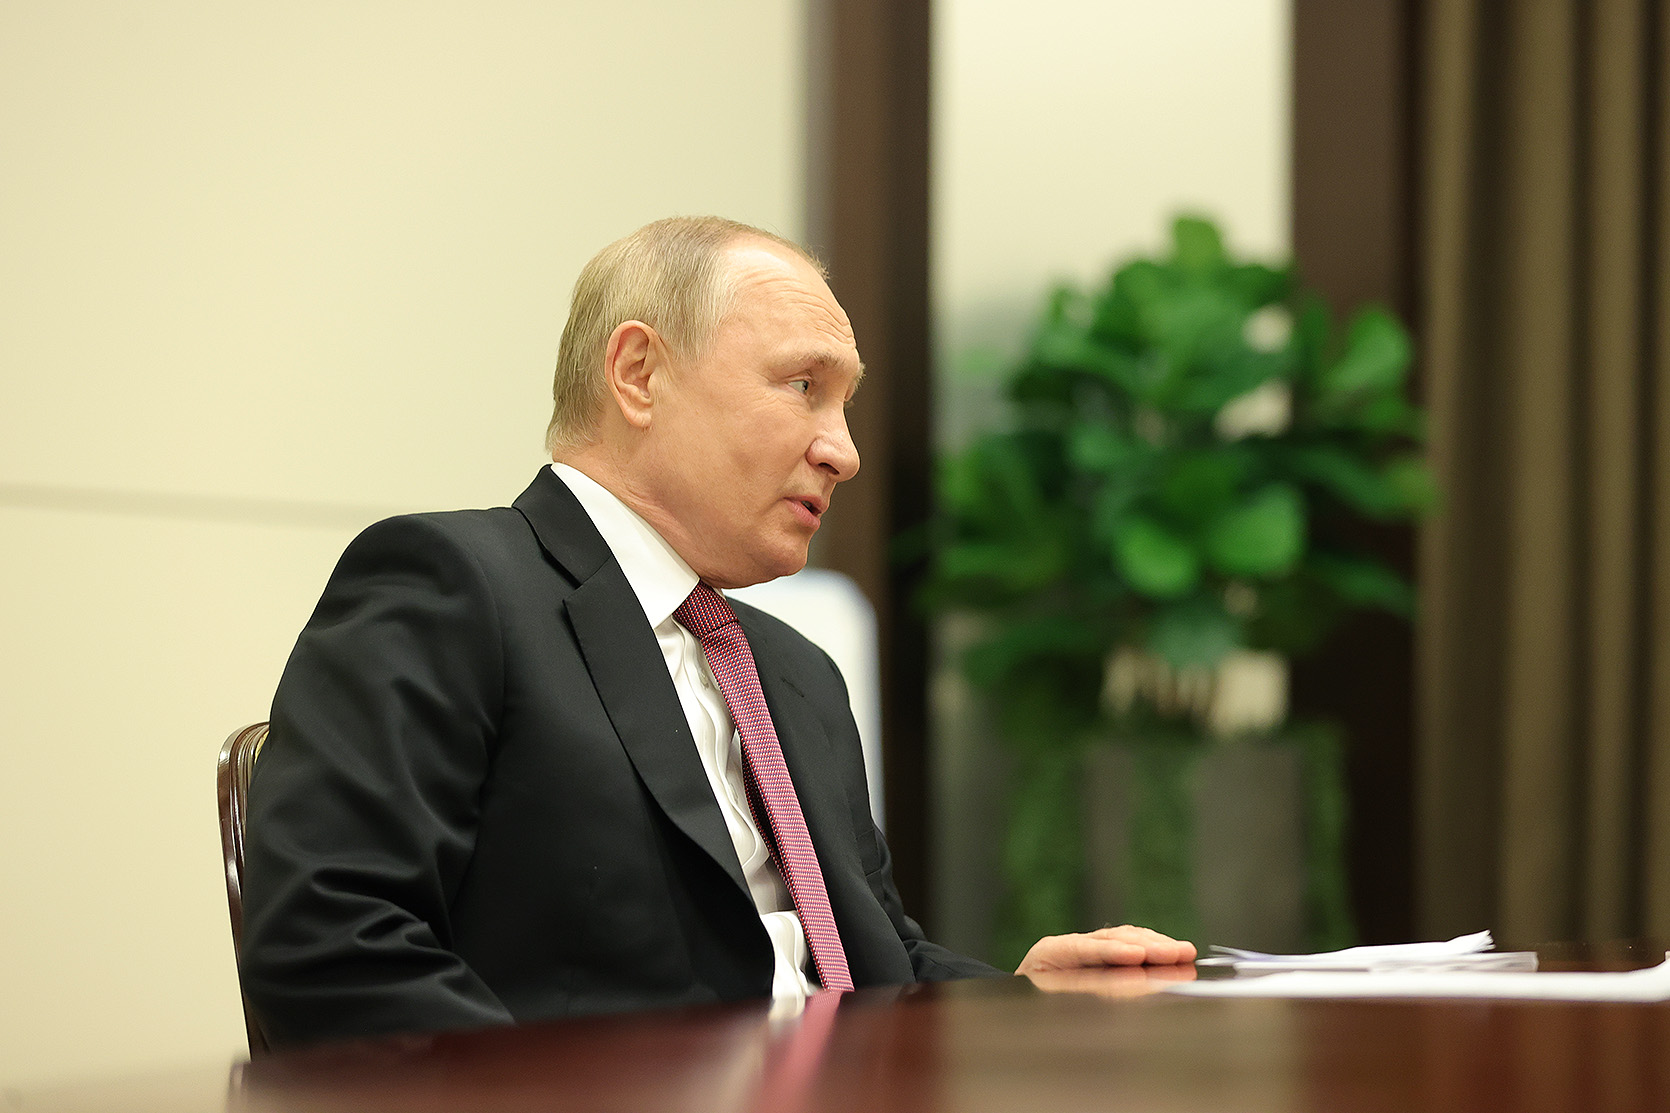 Путин: Запад загнал себя в ловушку, не сумев предвидеть ослабление своего доминирования